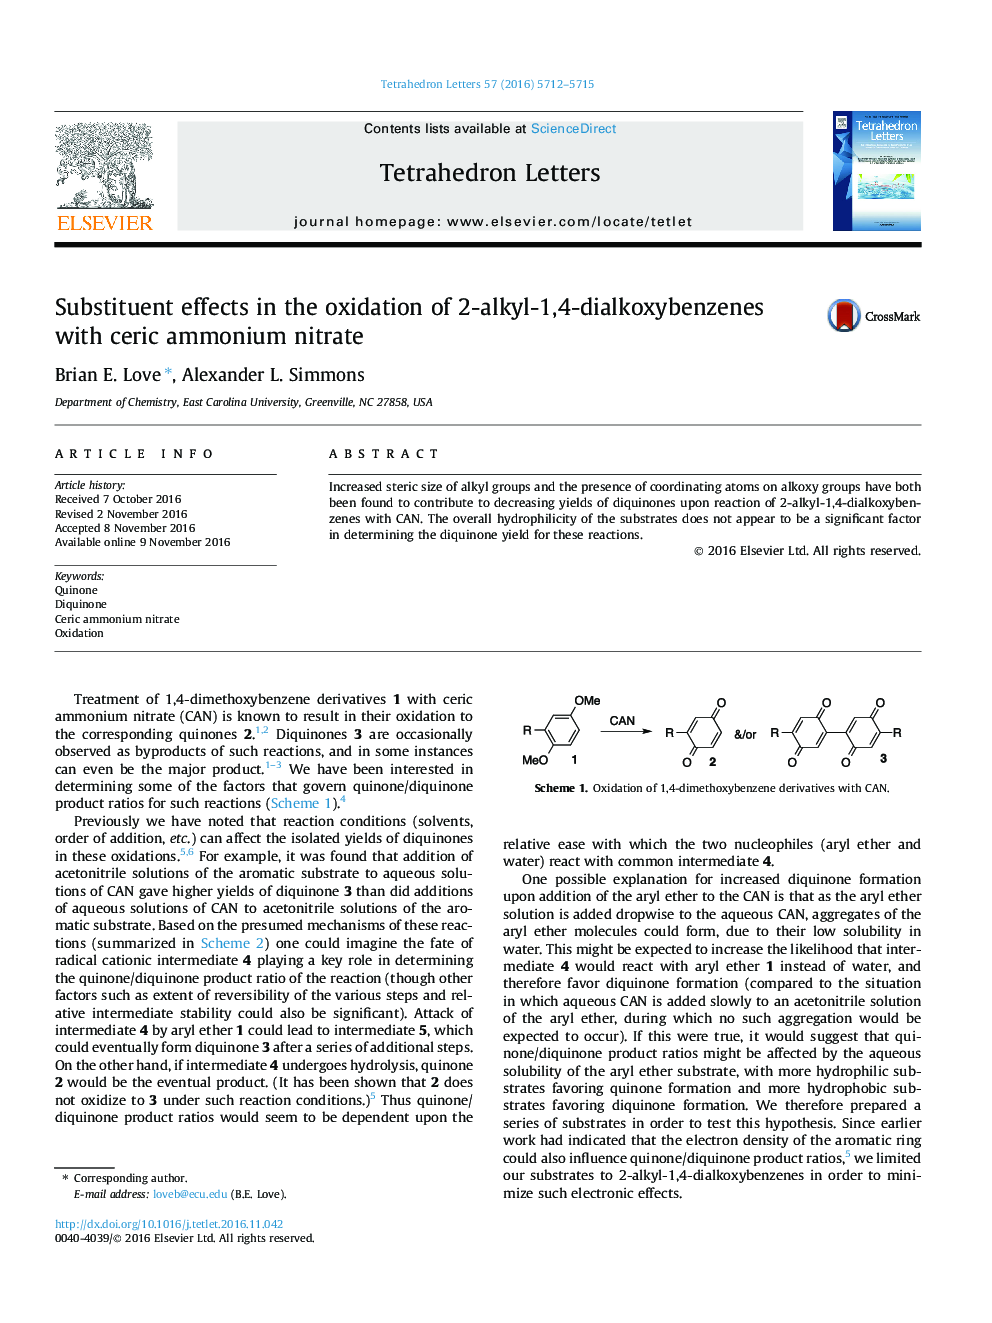 اثرات جایگزین در اکسیداسیون 2-آلکیل-1،4-دیالوکسیبوزنها با نیترات آمونیوم سریک 